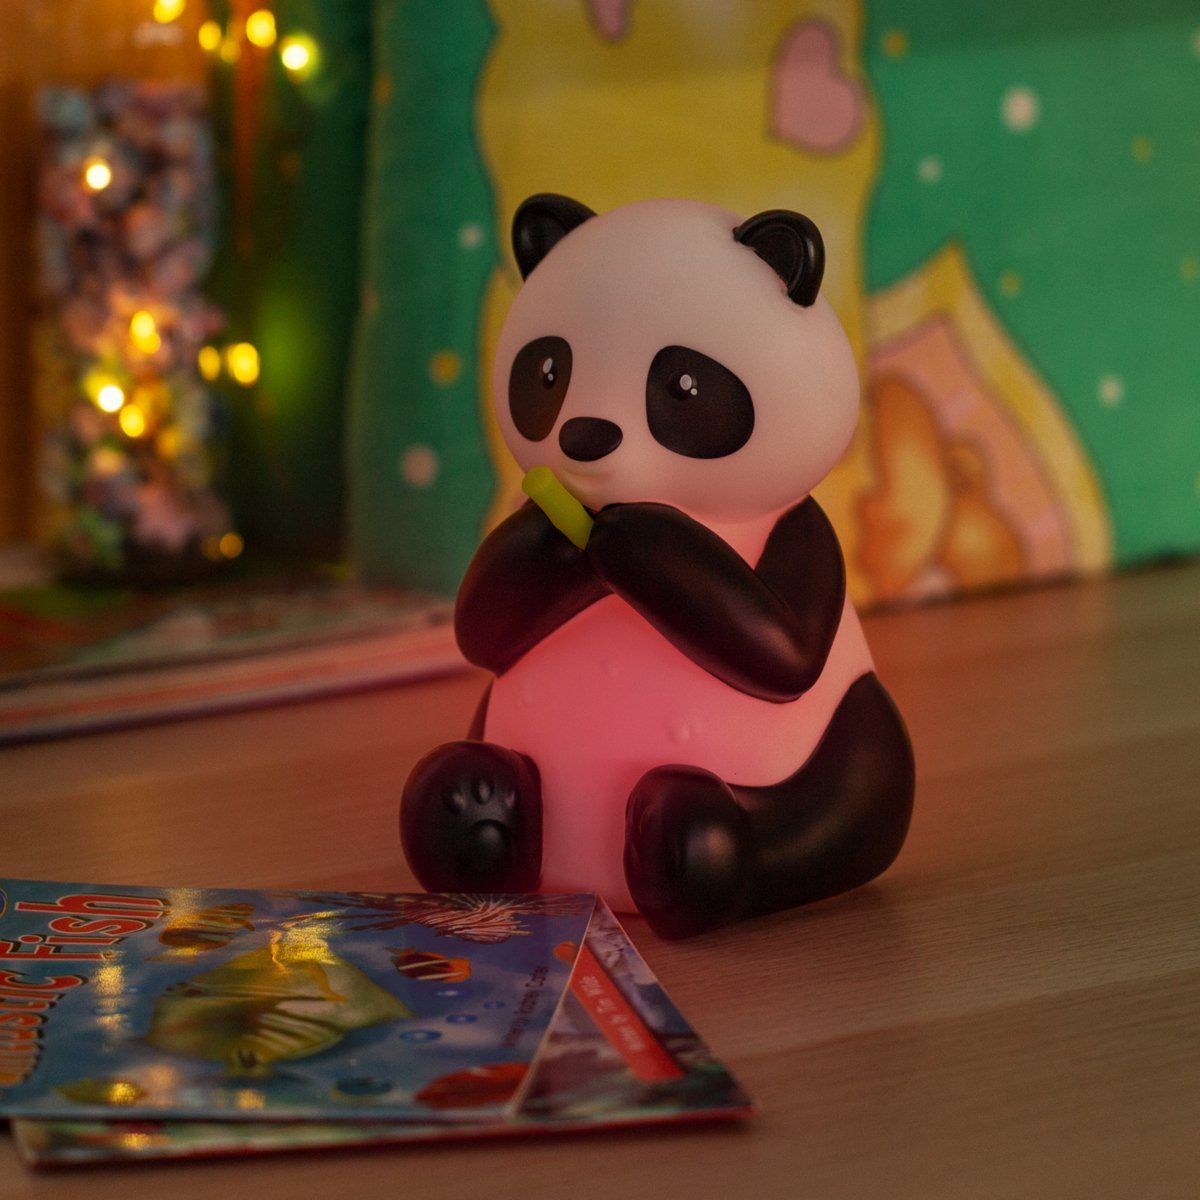 Navaris LED Nachtleuchte RGB Panda Nachtlampe Design Süße Nachtlicht - Farbwechsel